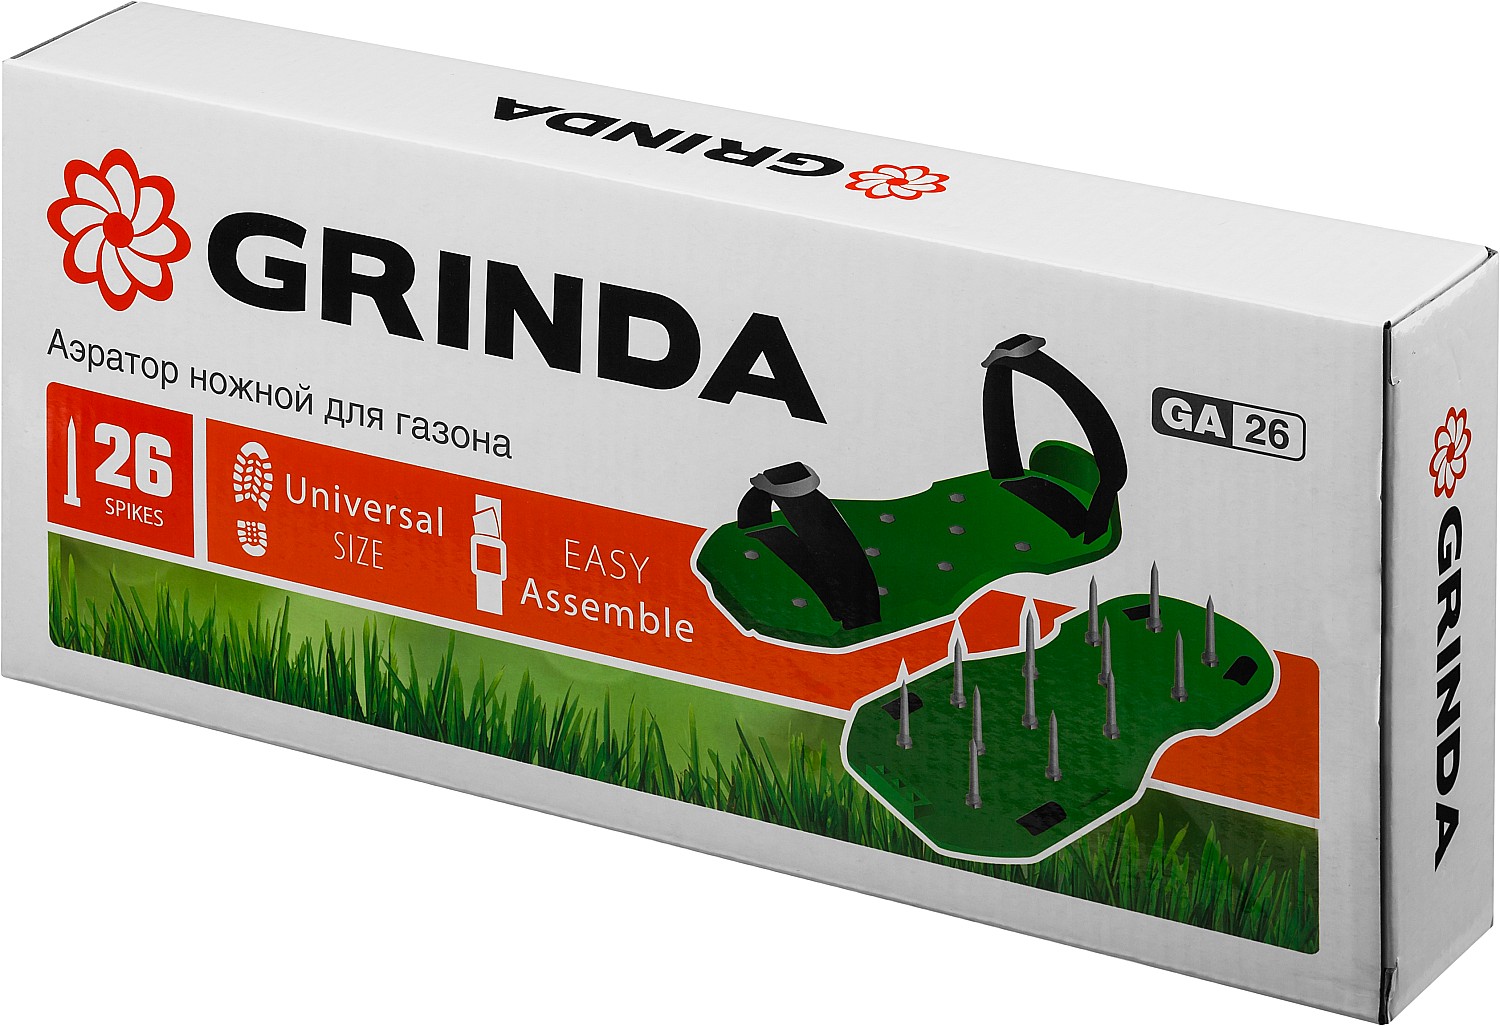 Аэратор ножной GRINDA GA-26 для газона со стальными шипами, 26 шипов длиной 50мм